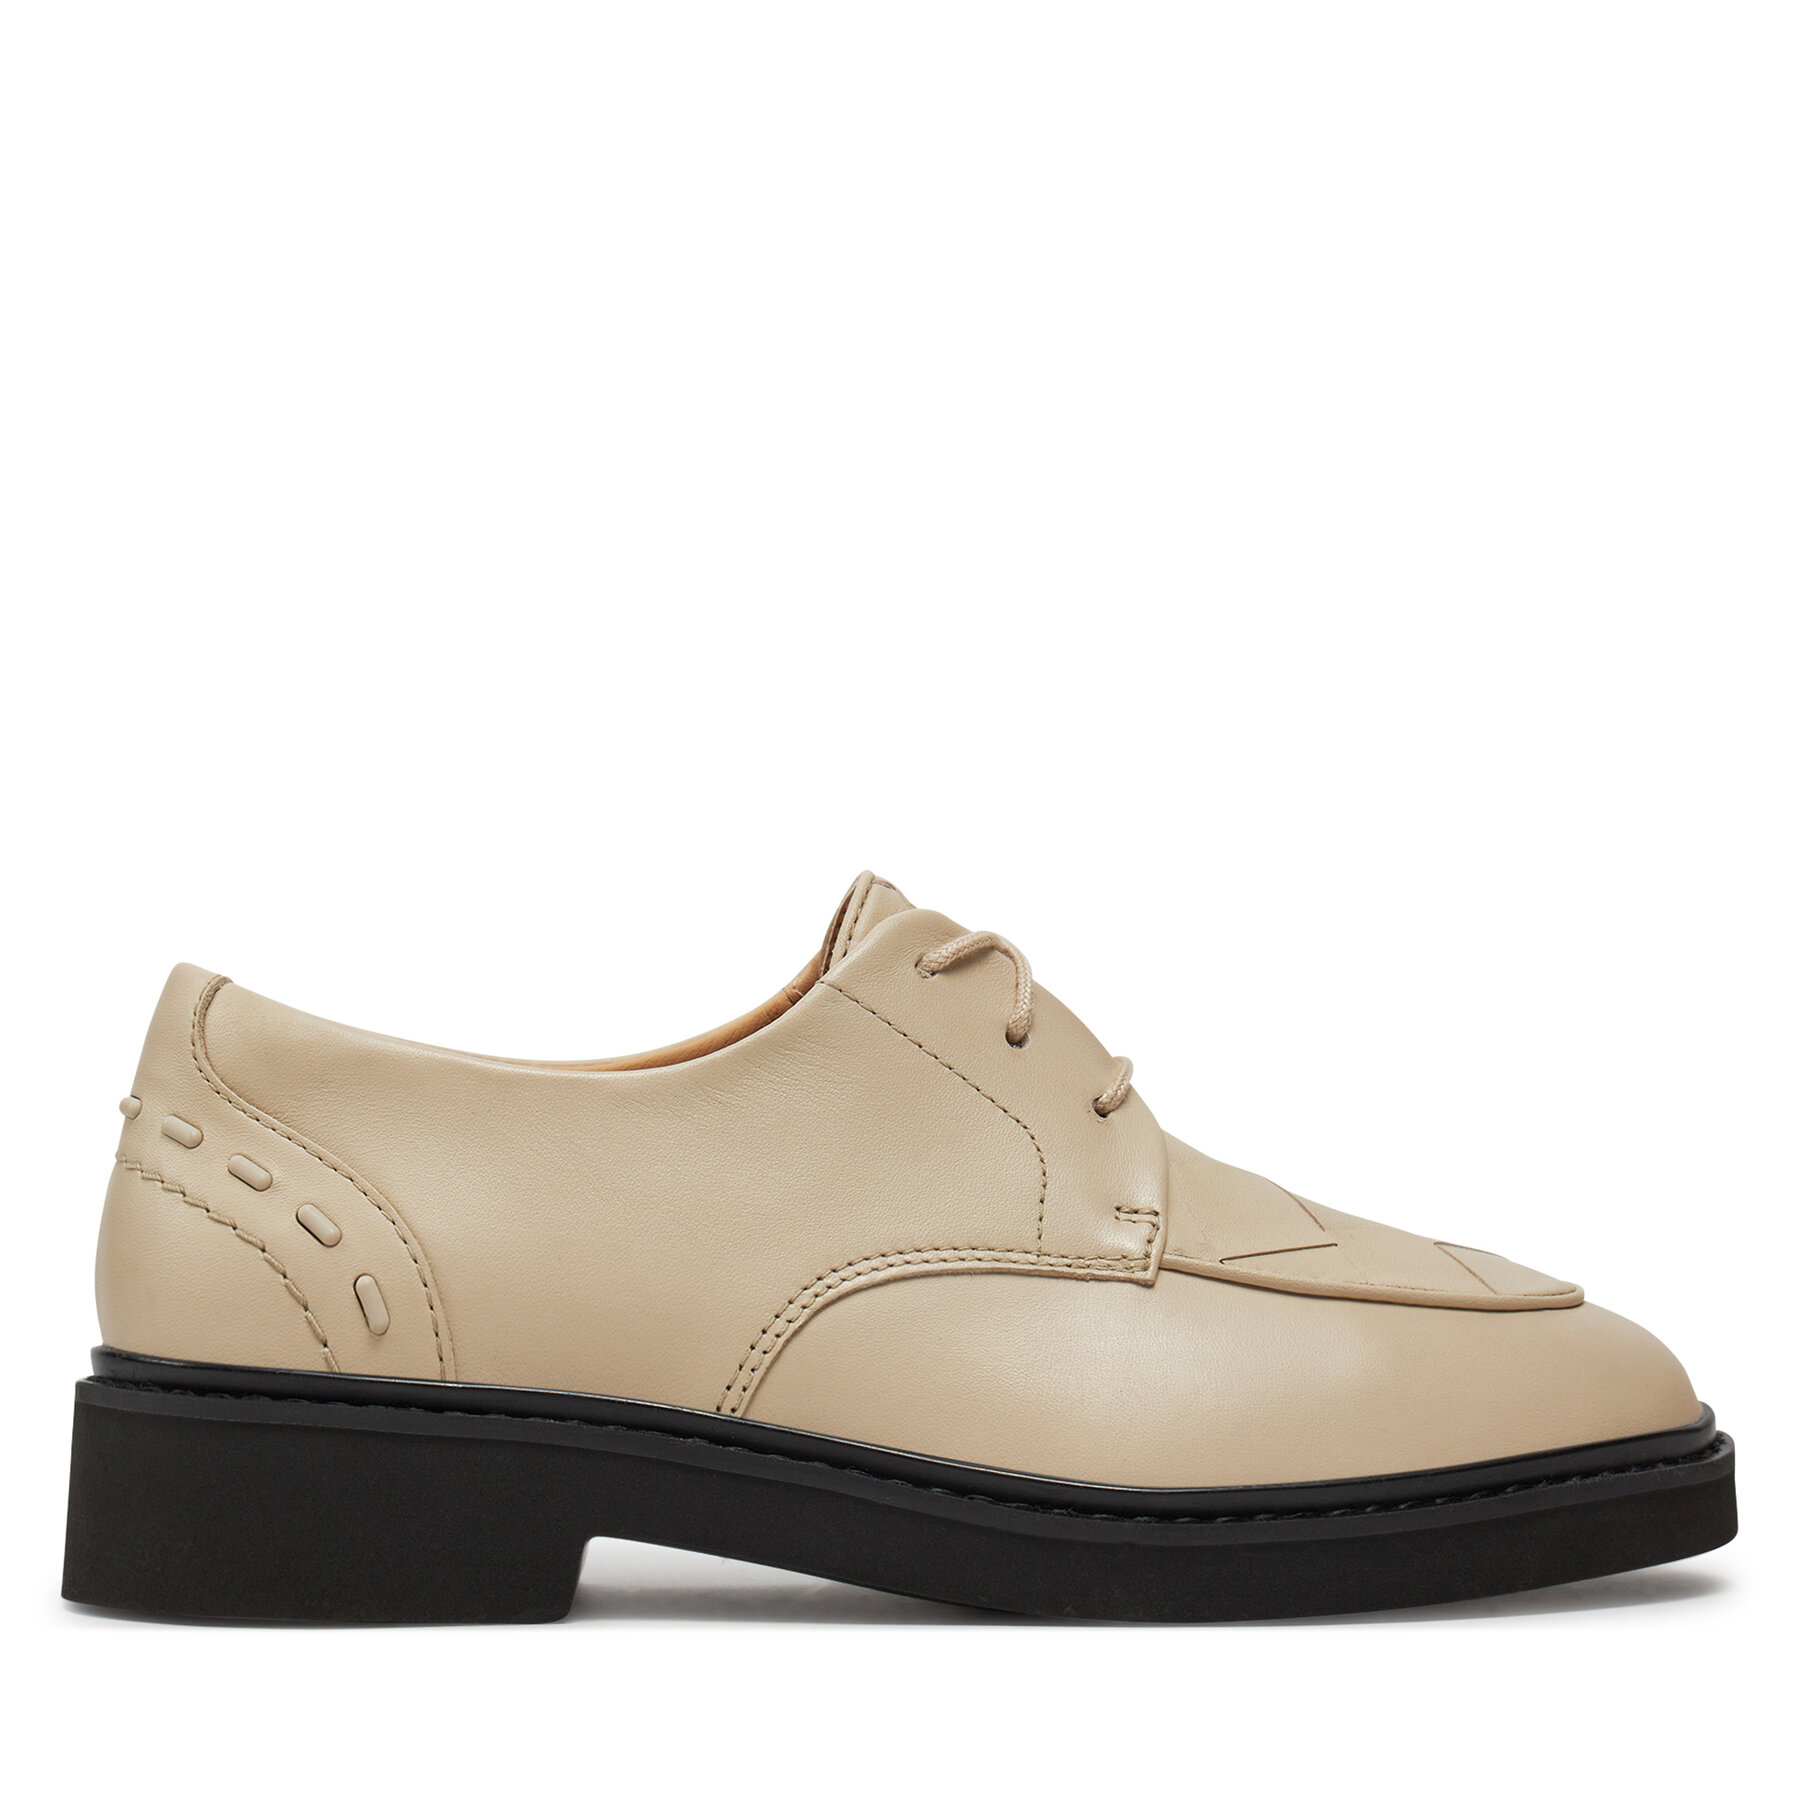 Oxford Schuhe Clarks Splend Weave 26176809 Ivory Leather von Clarks